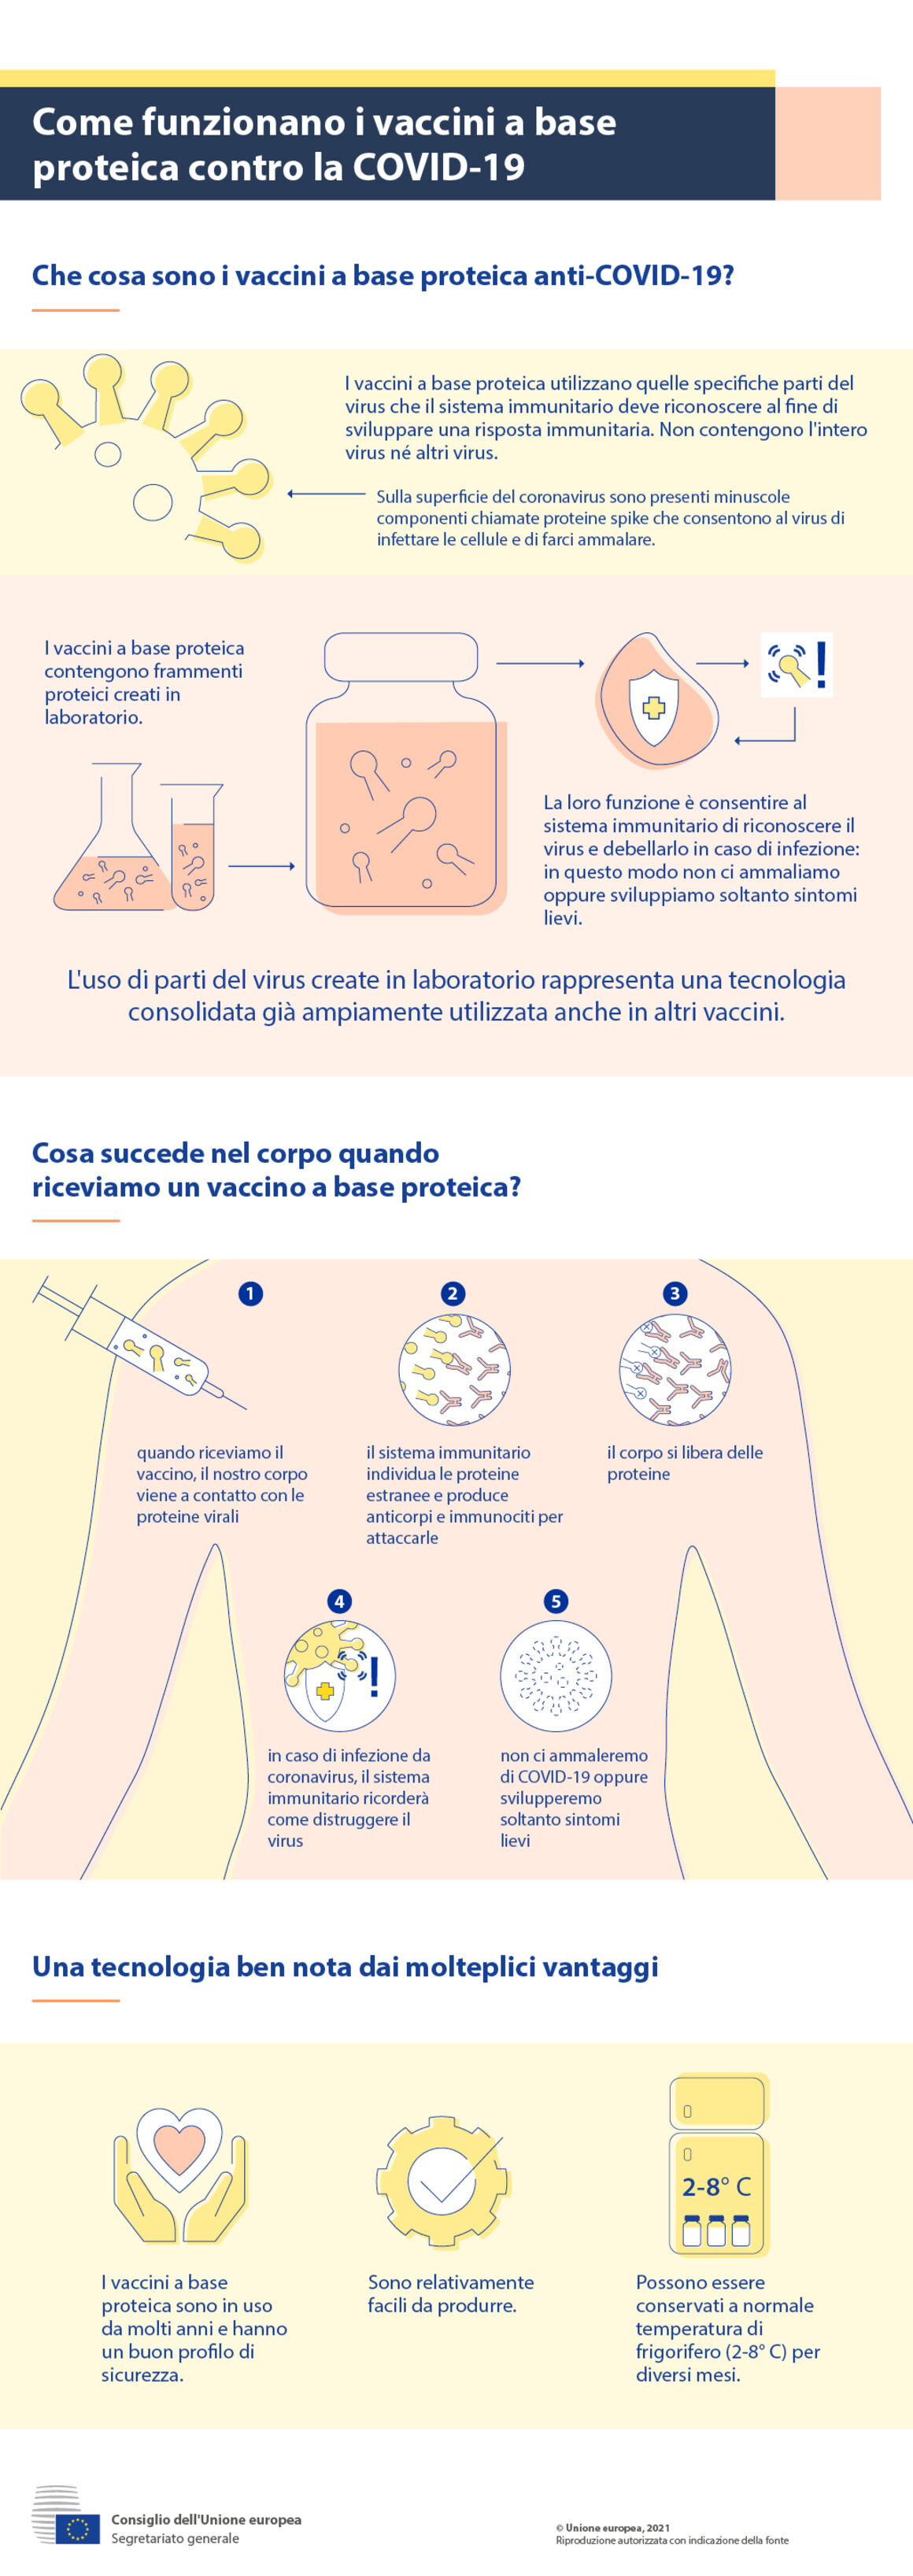 Infografica - Come funzionano i vaccini a base proteica contro la COVID-19